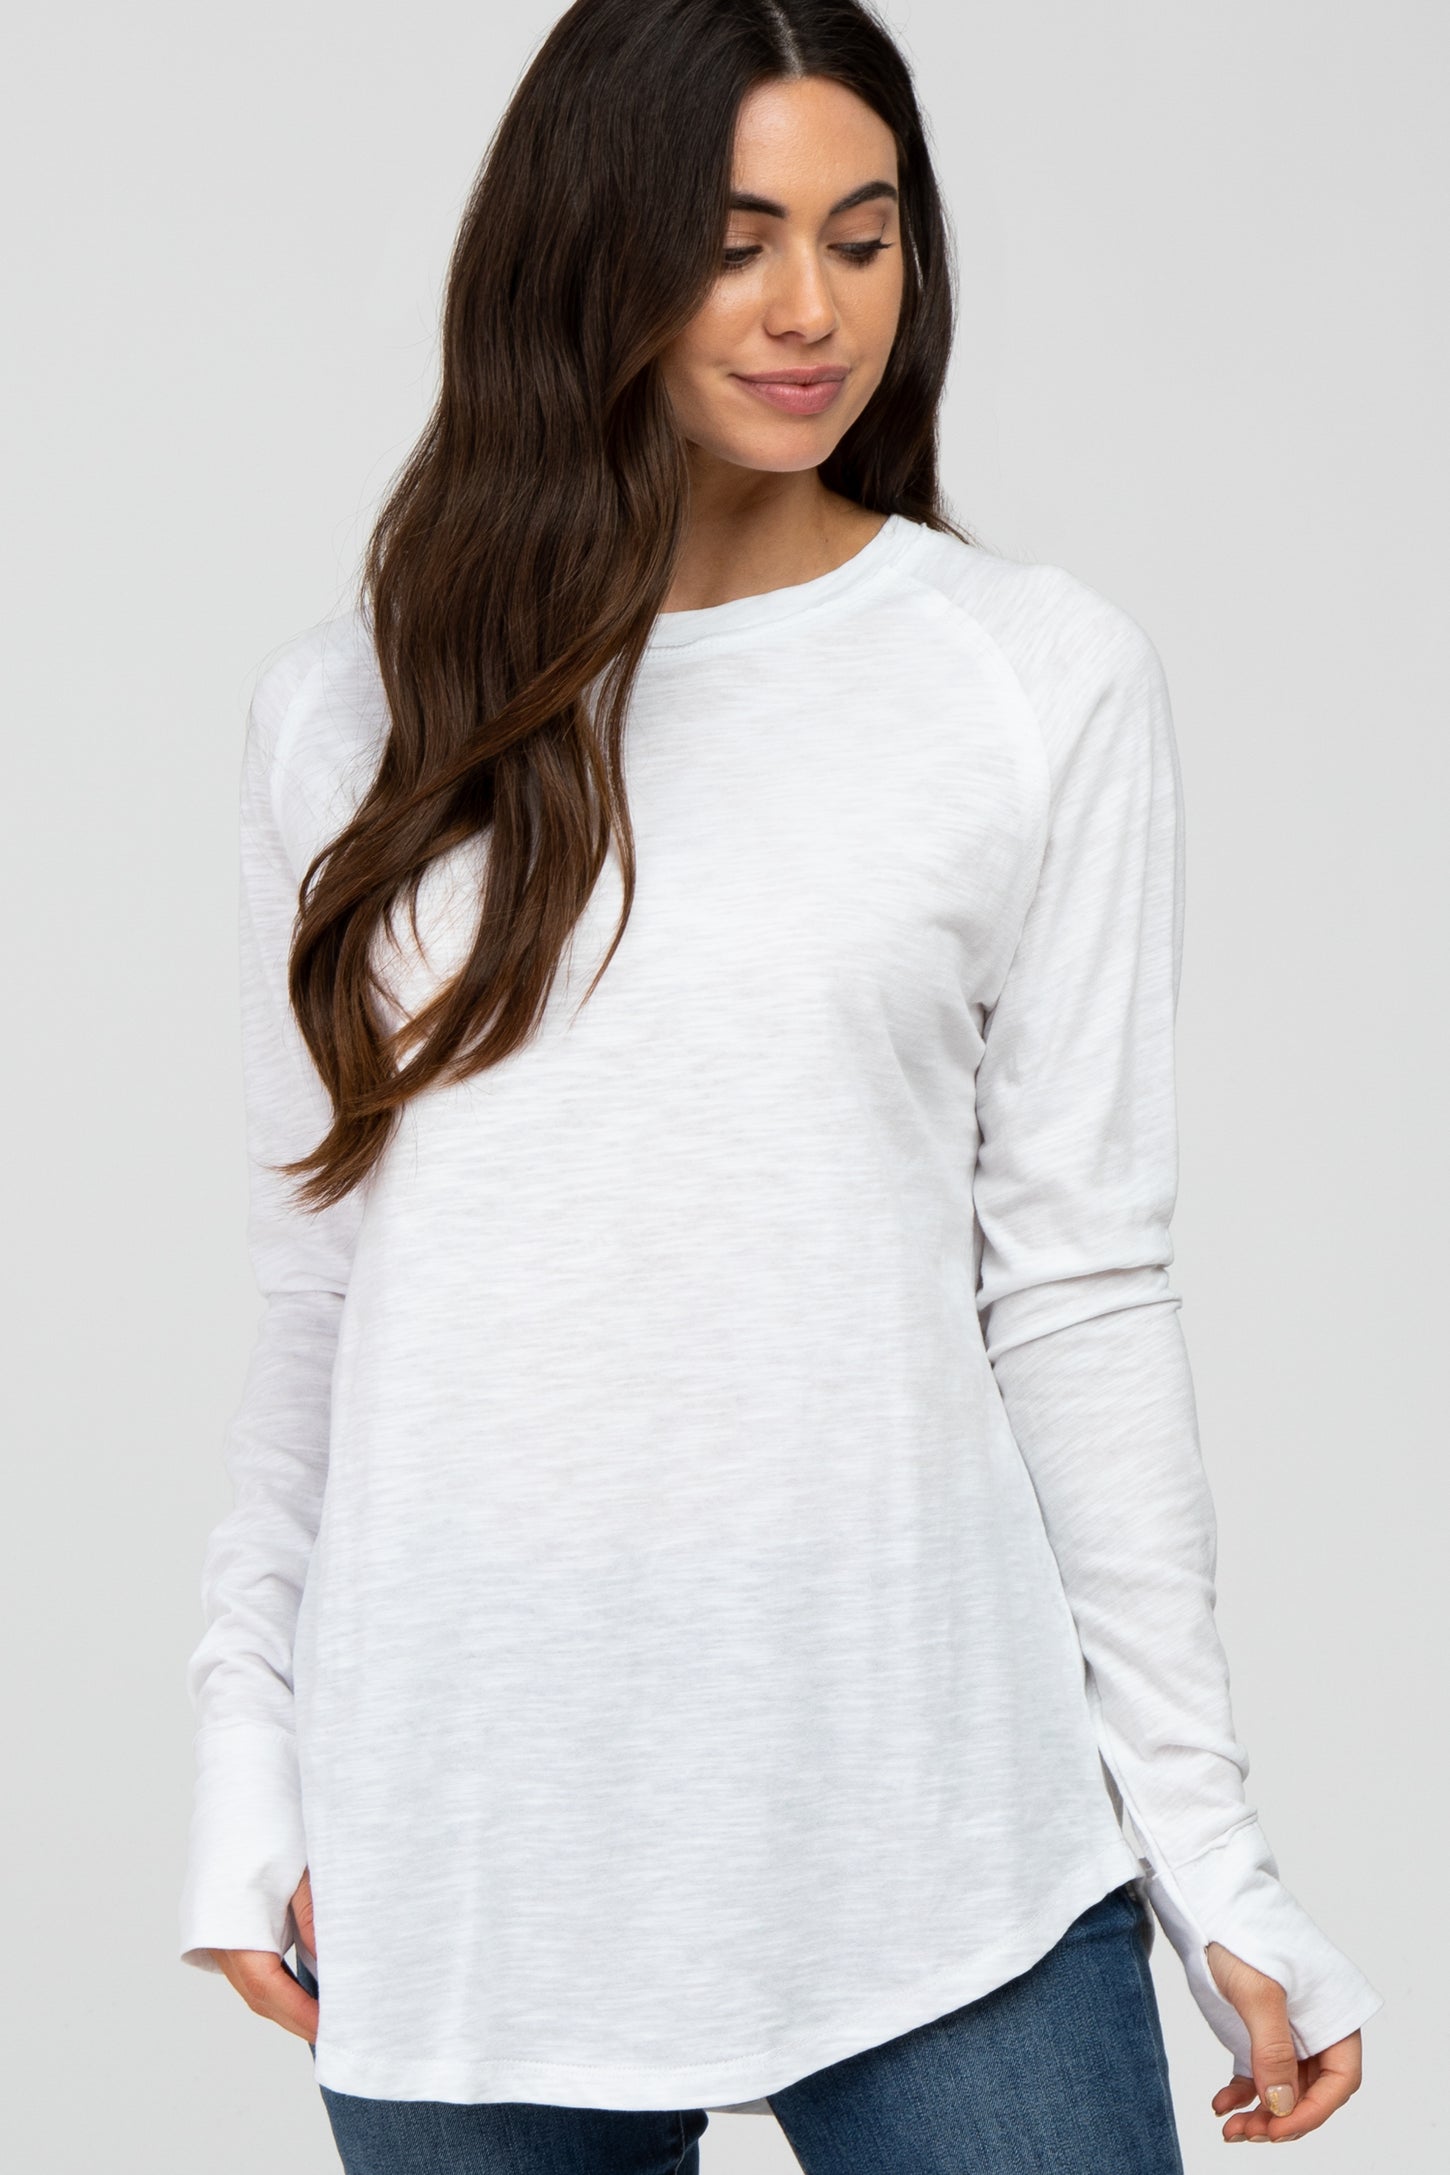 White Basic Raglan Long Sleeve Maternity Top– PinkBlush